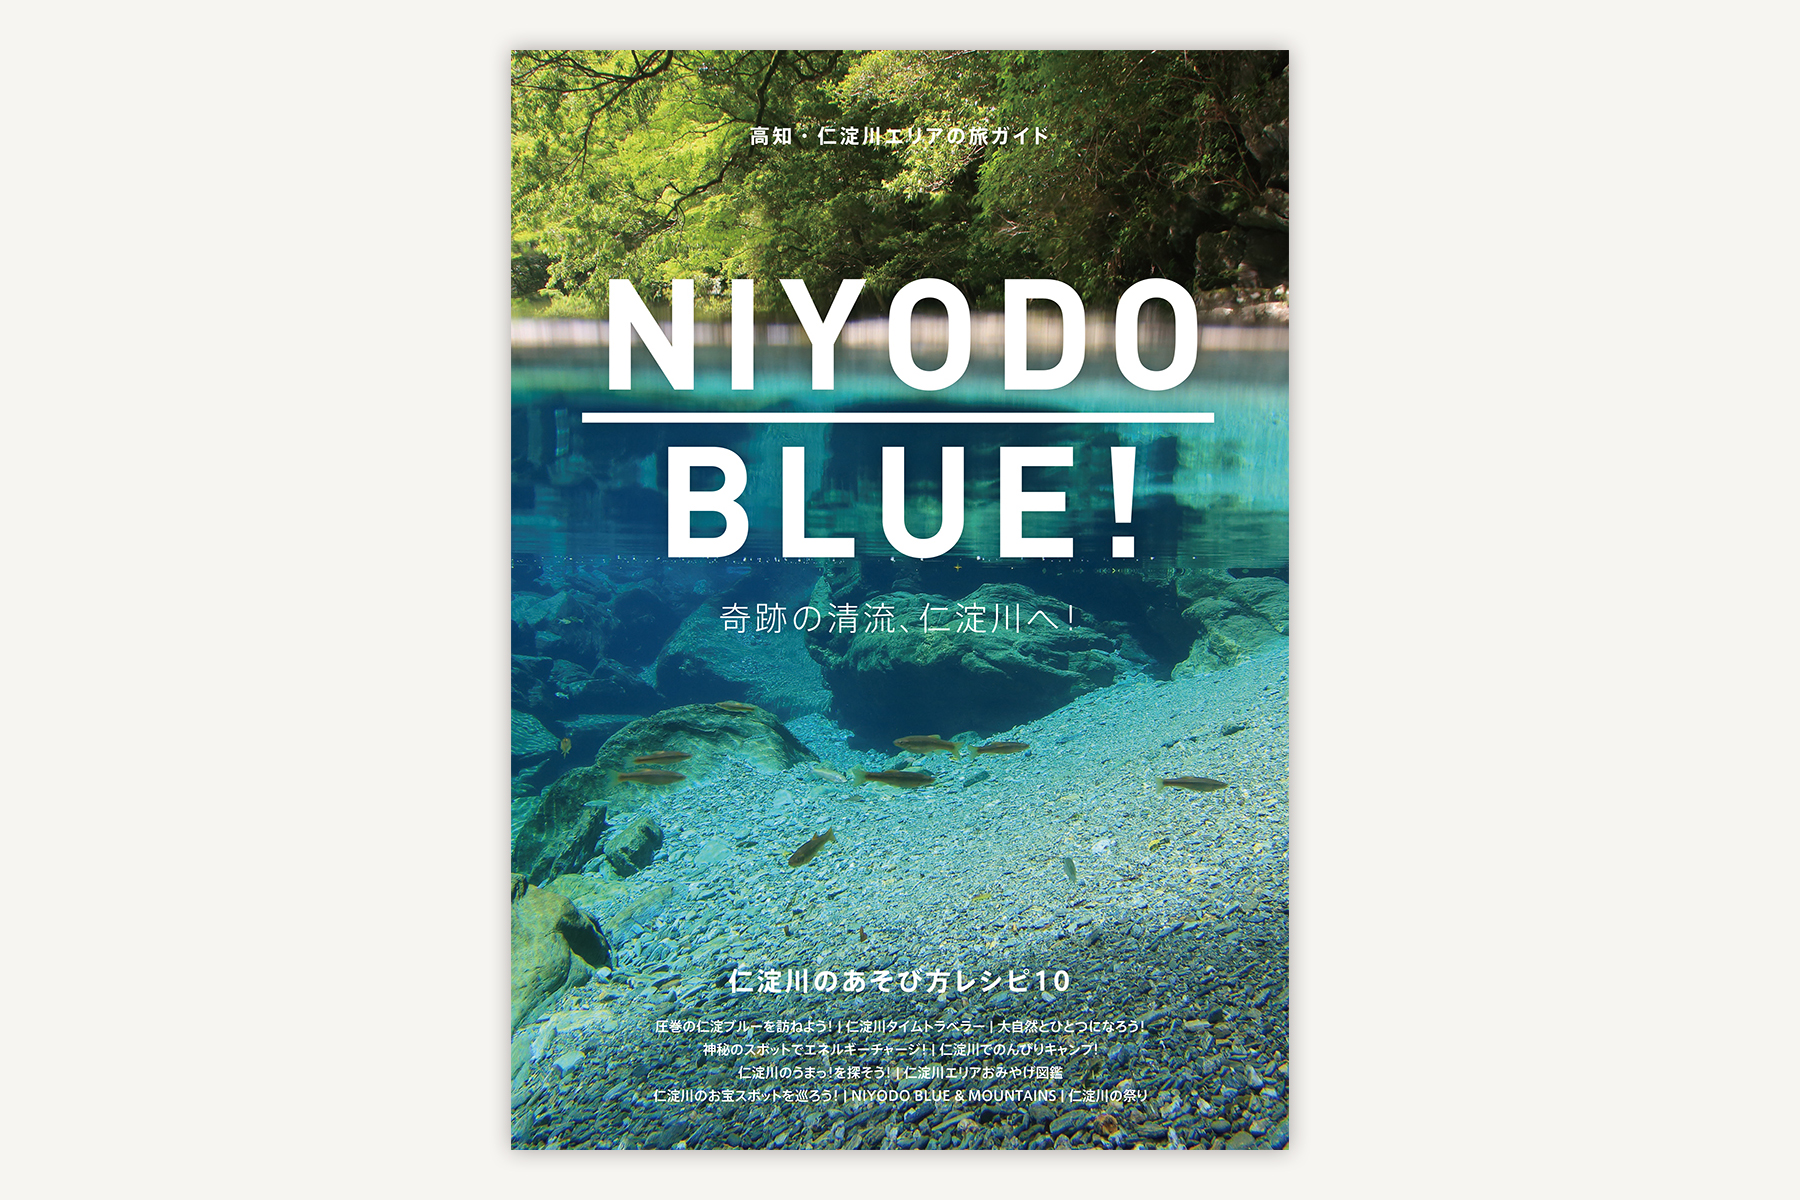 仁淀ブルー観光協議会『NIYODO BLUE!-仁淀川のあそび方レシピ10』